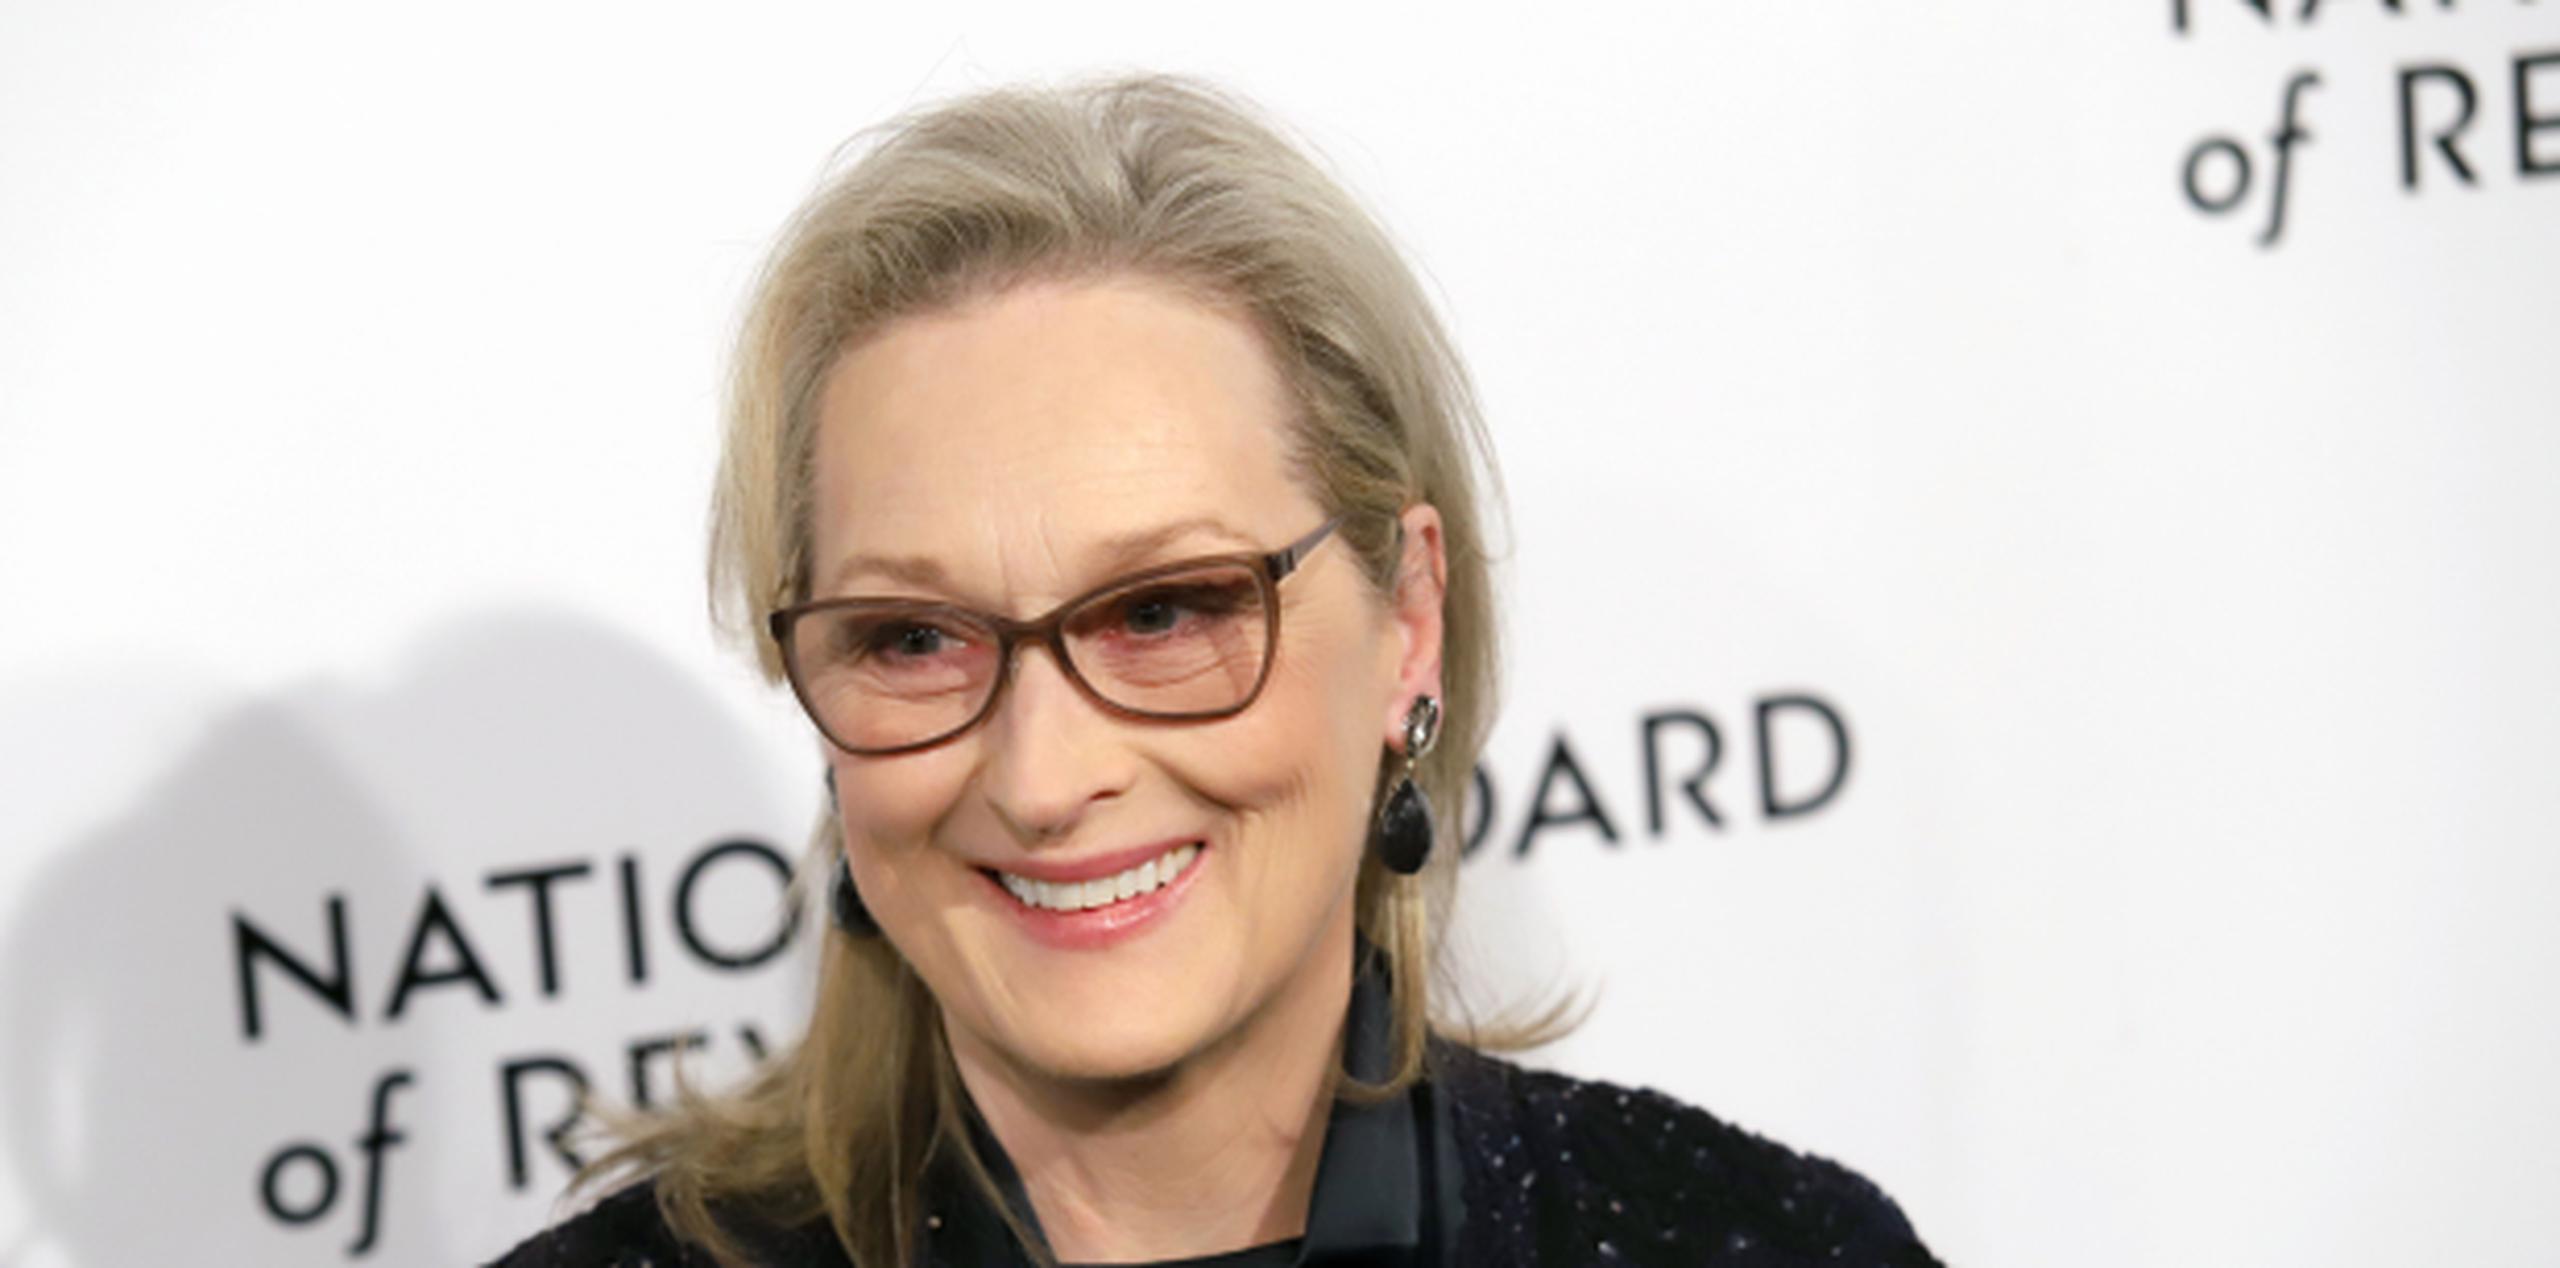 La actriz Meryl Streep tiene 68 años. (Shutterstock)